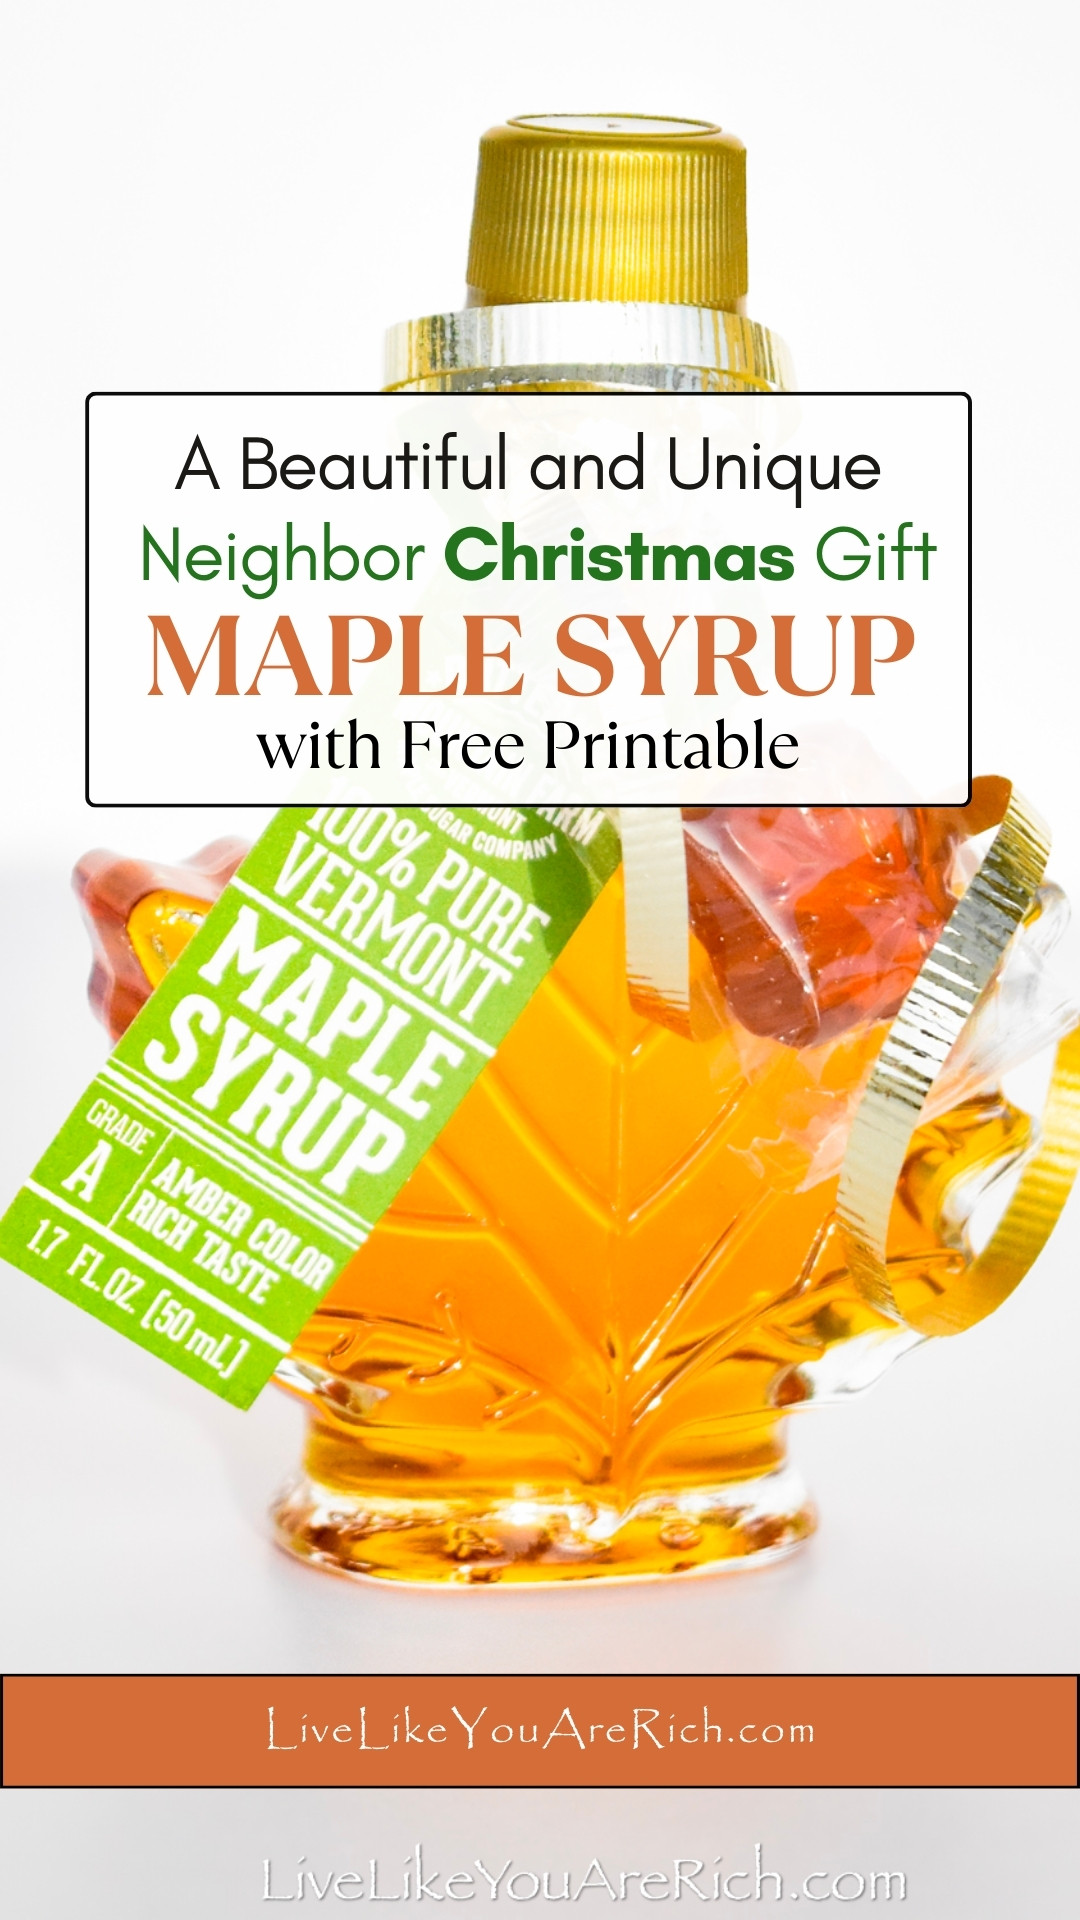 Neighbor Christmas Gift: Maple Syrup